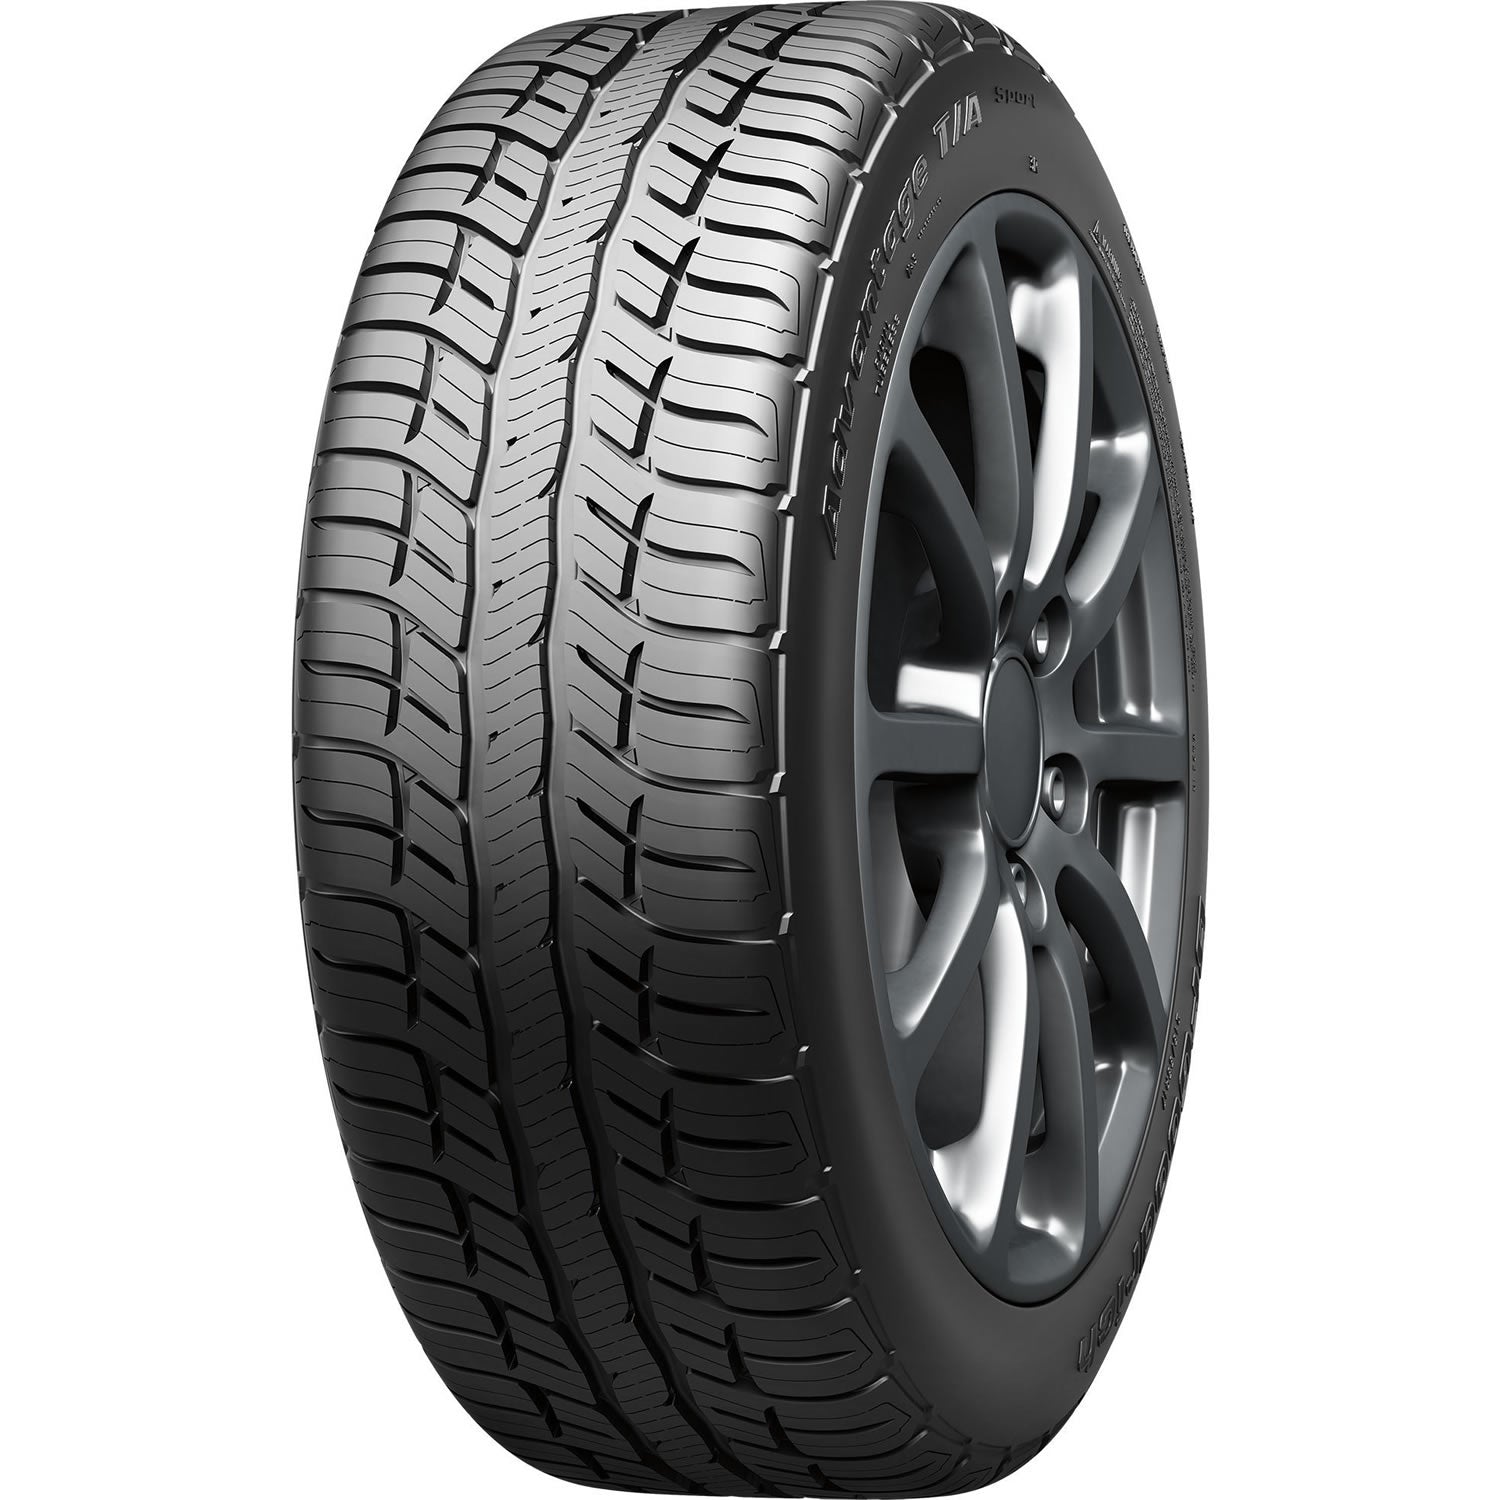 BFGOODRICH ADVANTAGE T/A SPORT 255/70R16 (30.1X10R 16) Tires